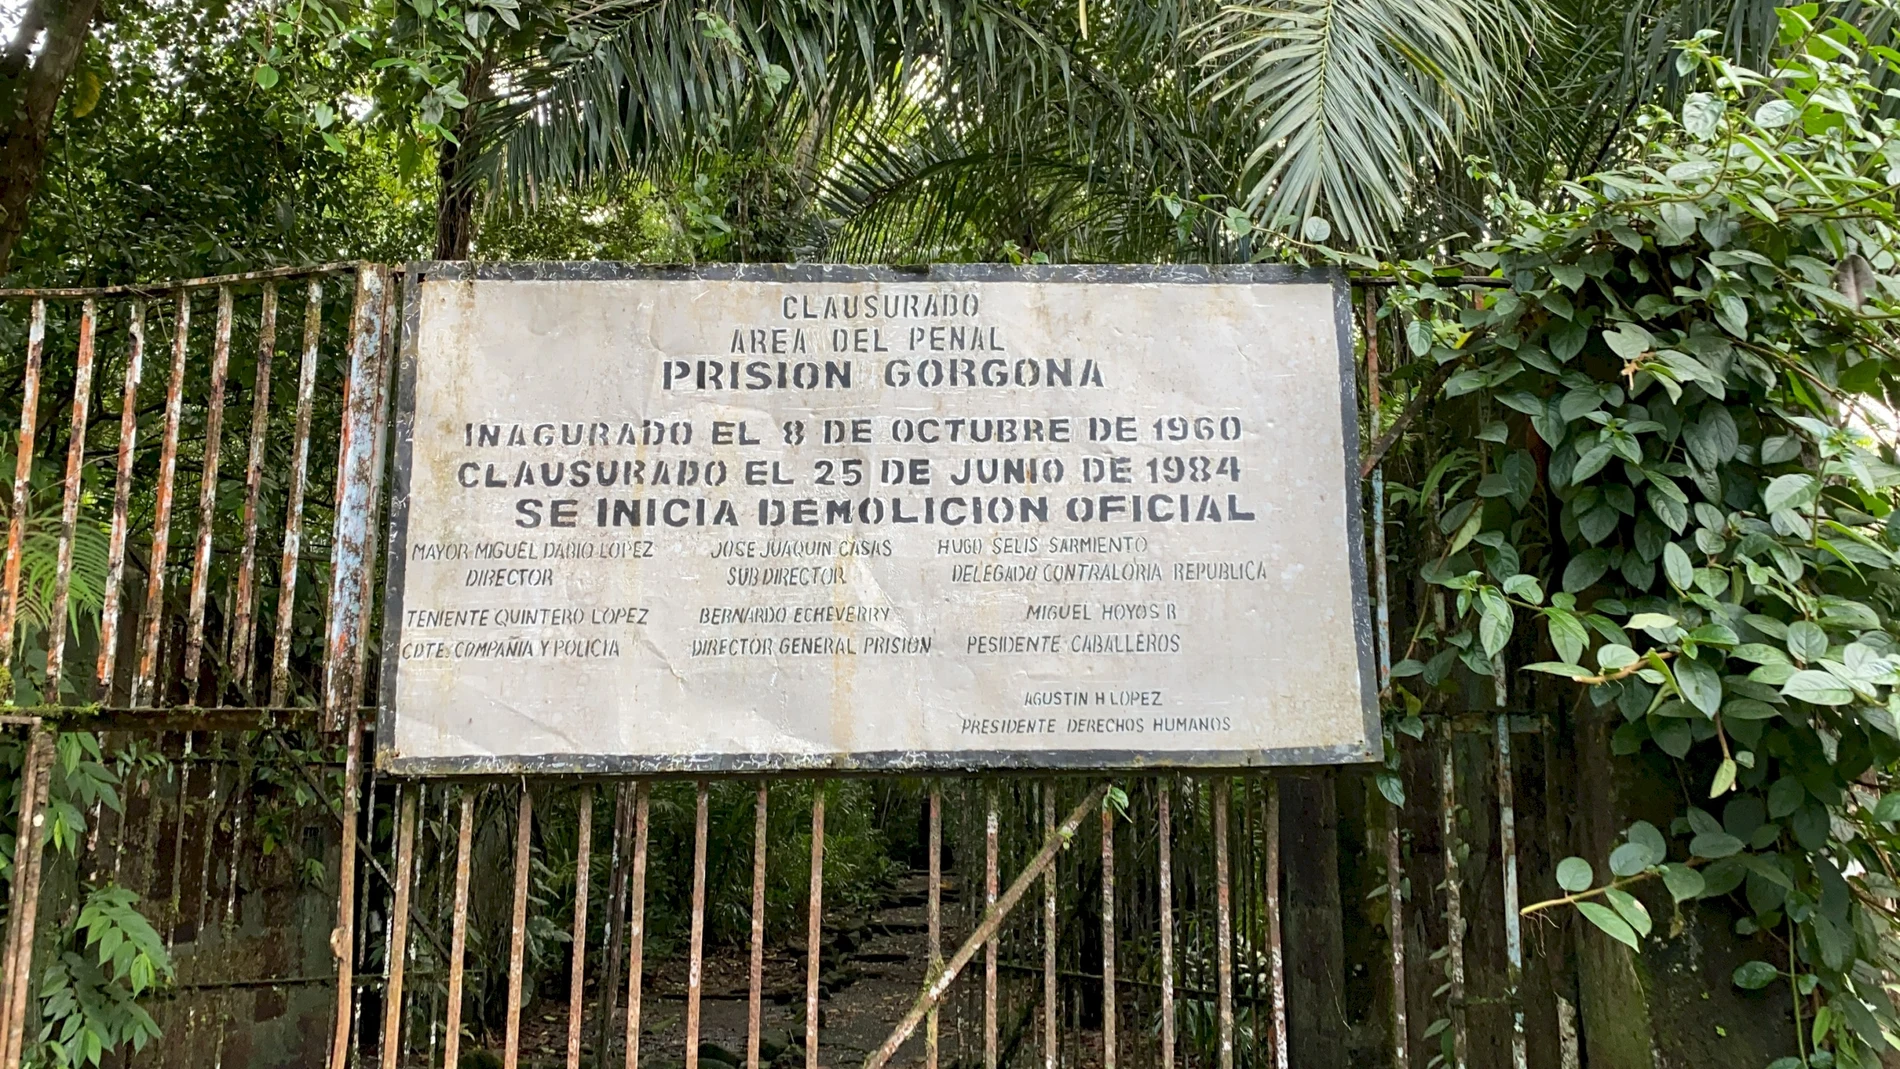 Cartel explicativo de la prisión de la Isla Gorgona| Fuente: humboldt.org.co